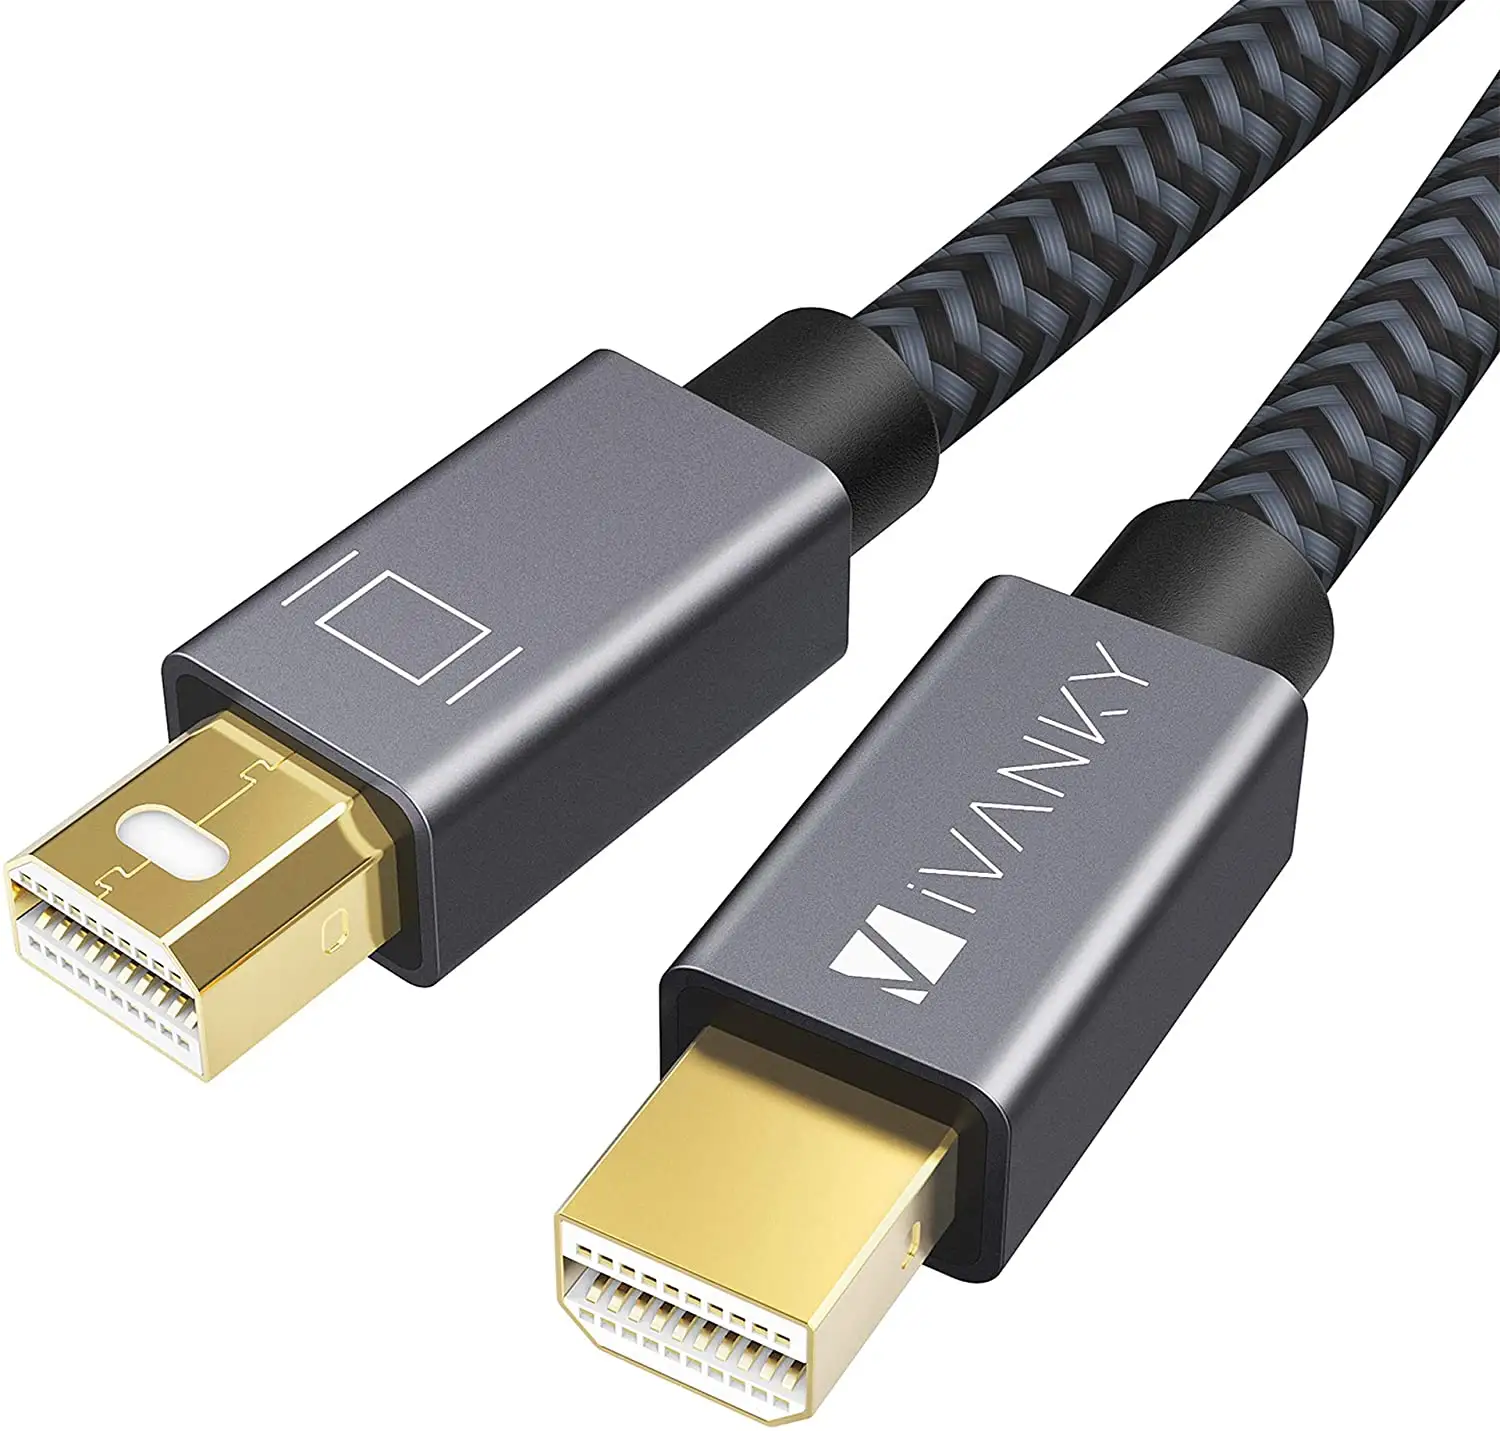 Mini DisplayPort to Mini DisplayPort Cable, 4K 60Hz Mini DP Cable iVANKY Mini Display Port Cable 2M/6.6ft, Grey